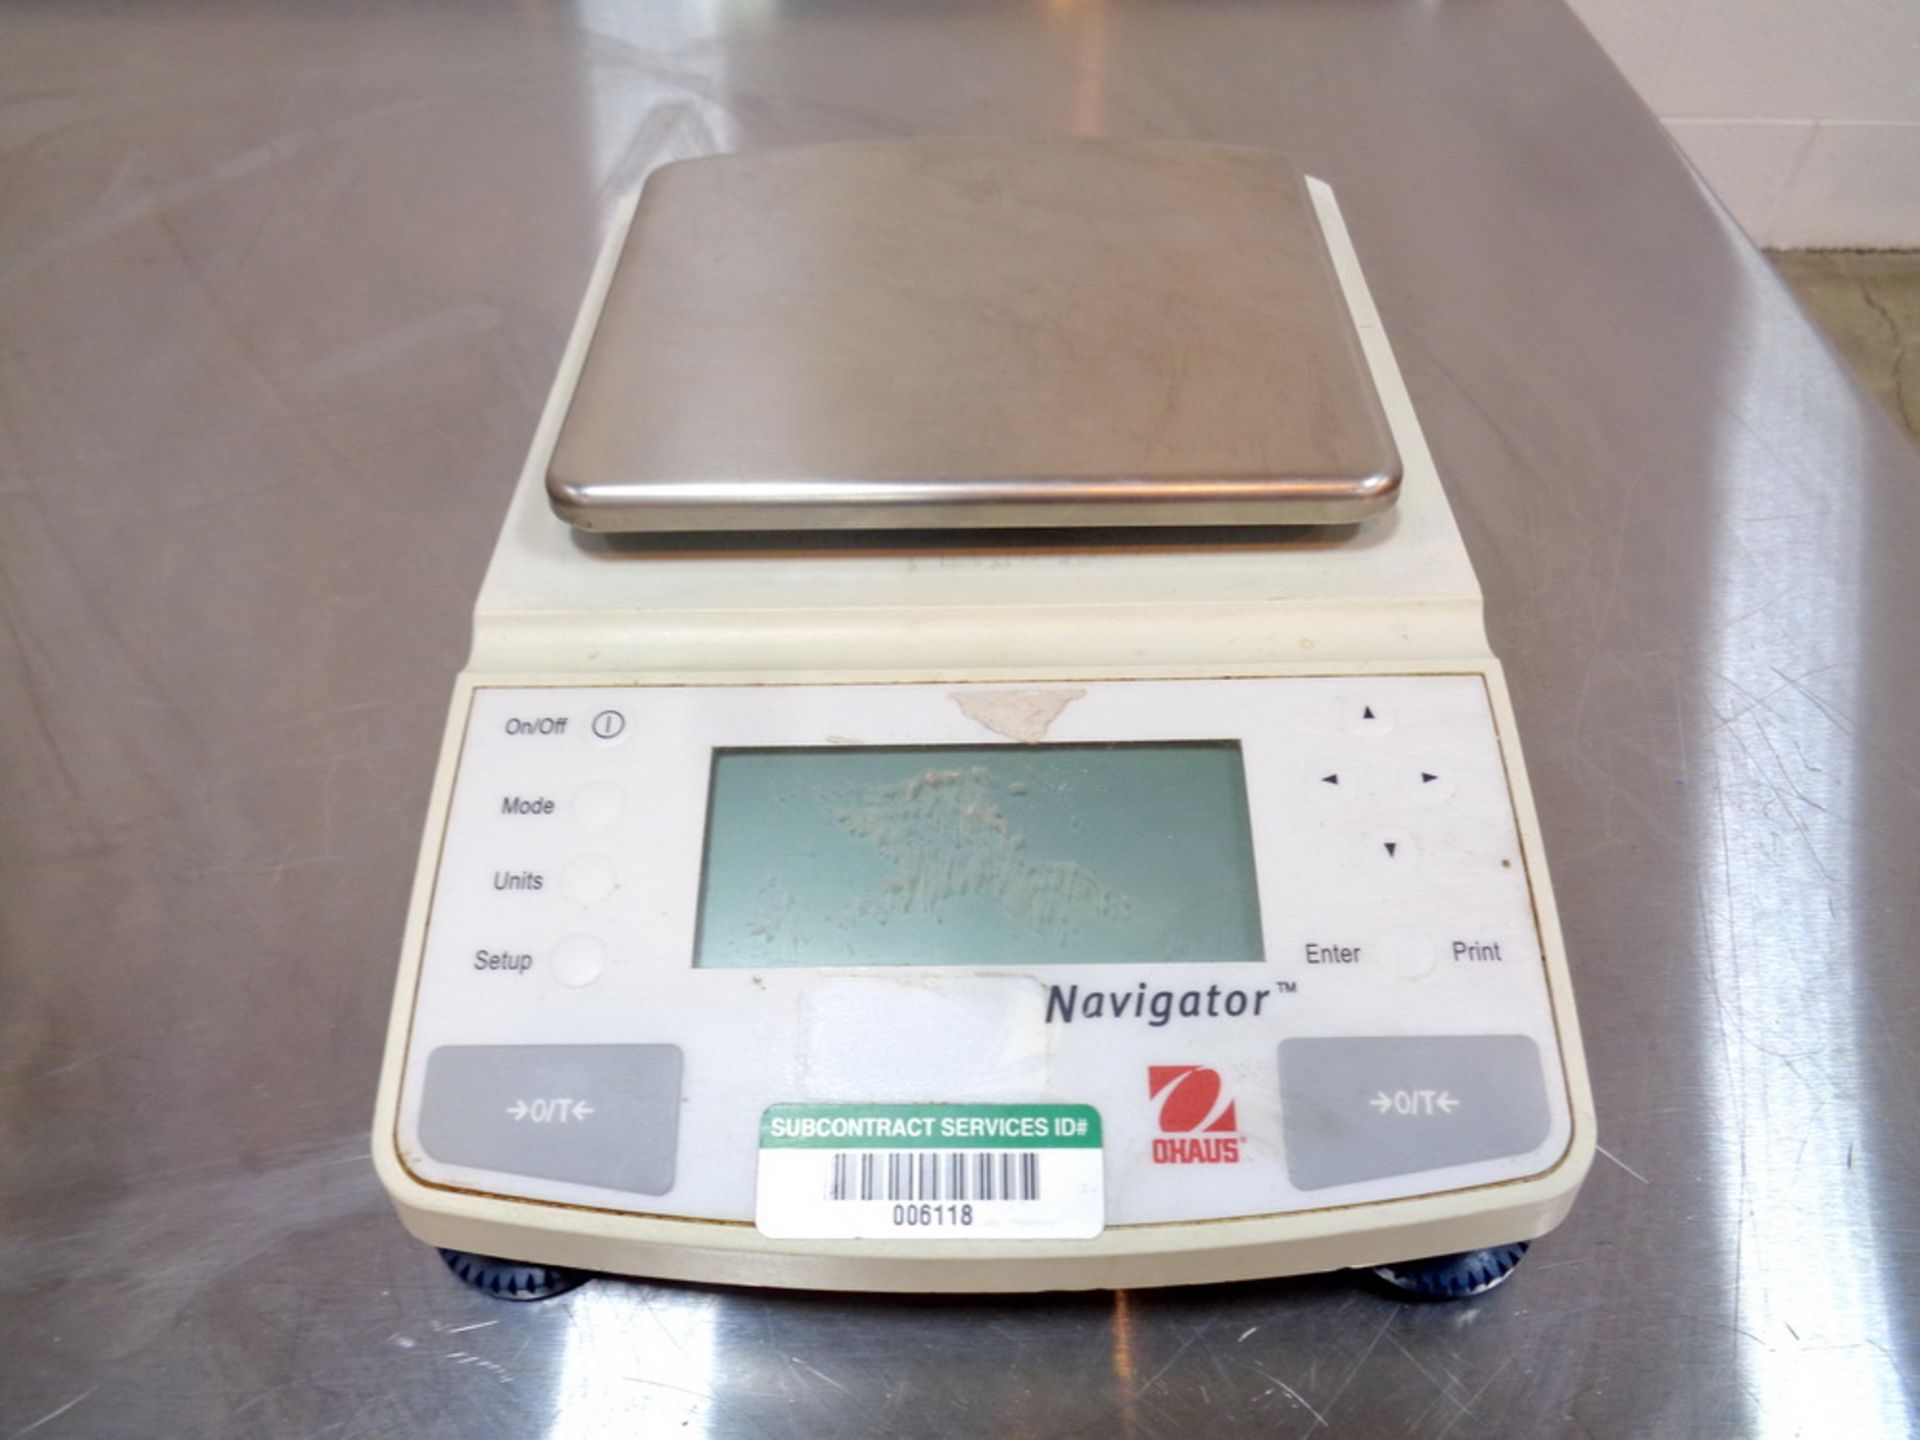 OHaus 2100 gram Digital Scale, Model N1B110, S/N 1119472182